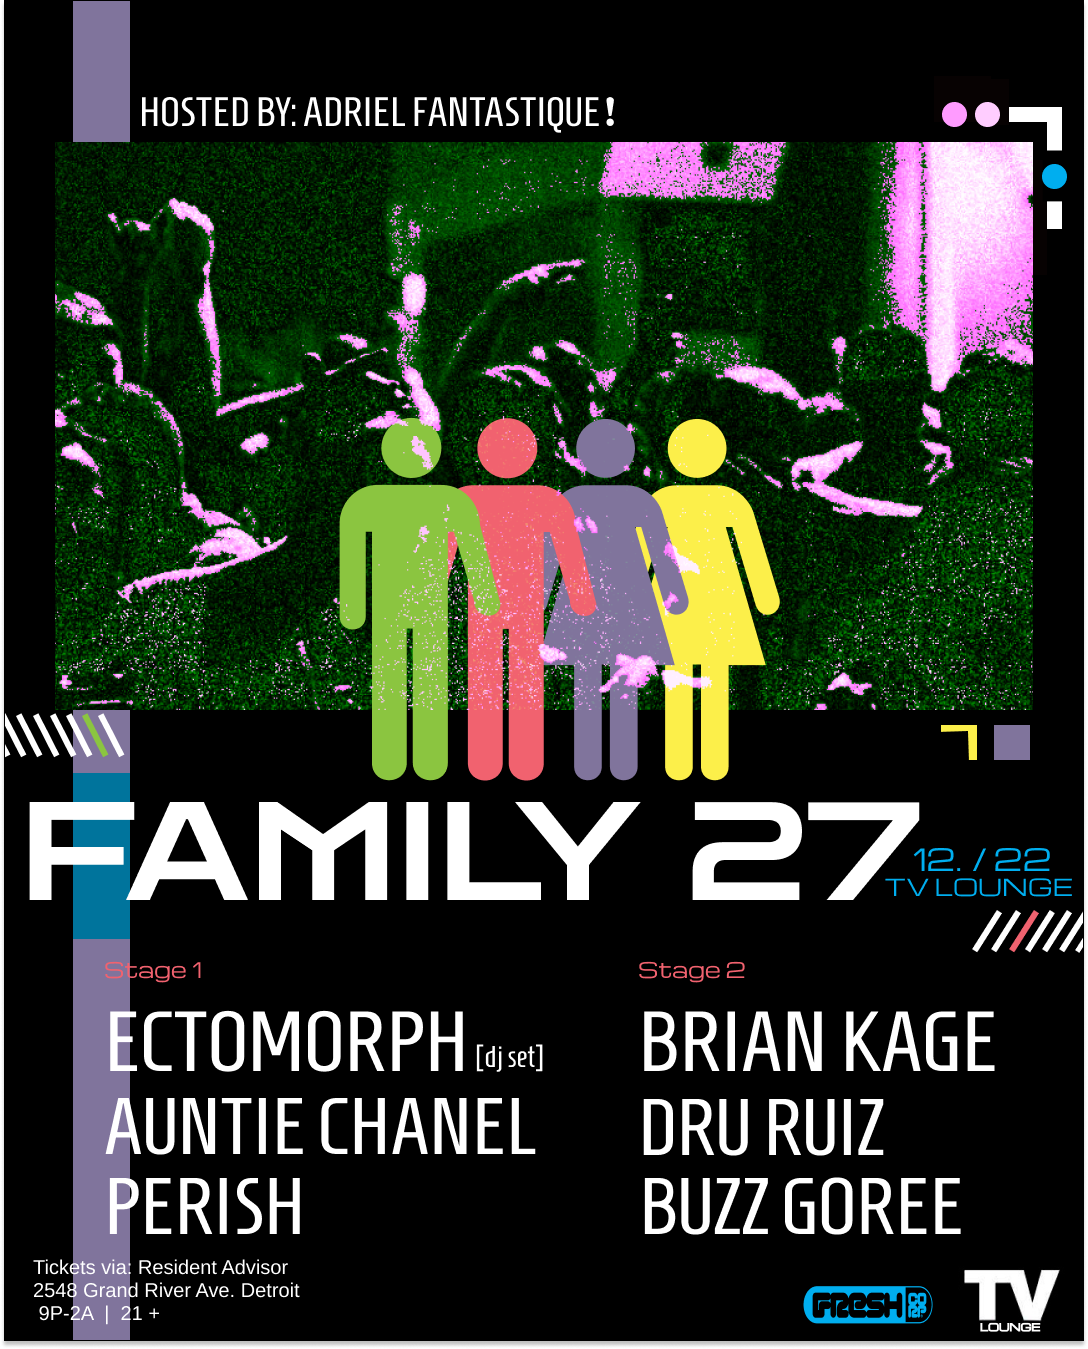 FAMILY 27 - フライヤー表